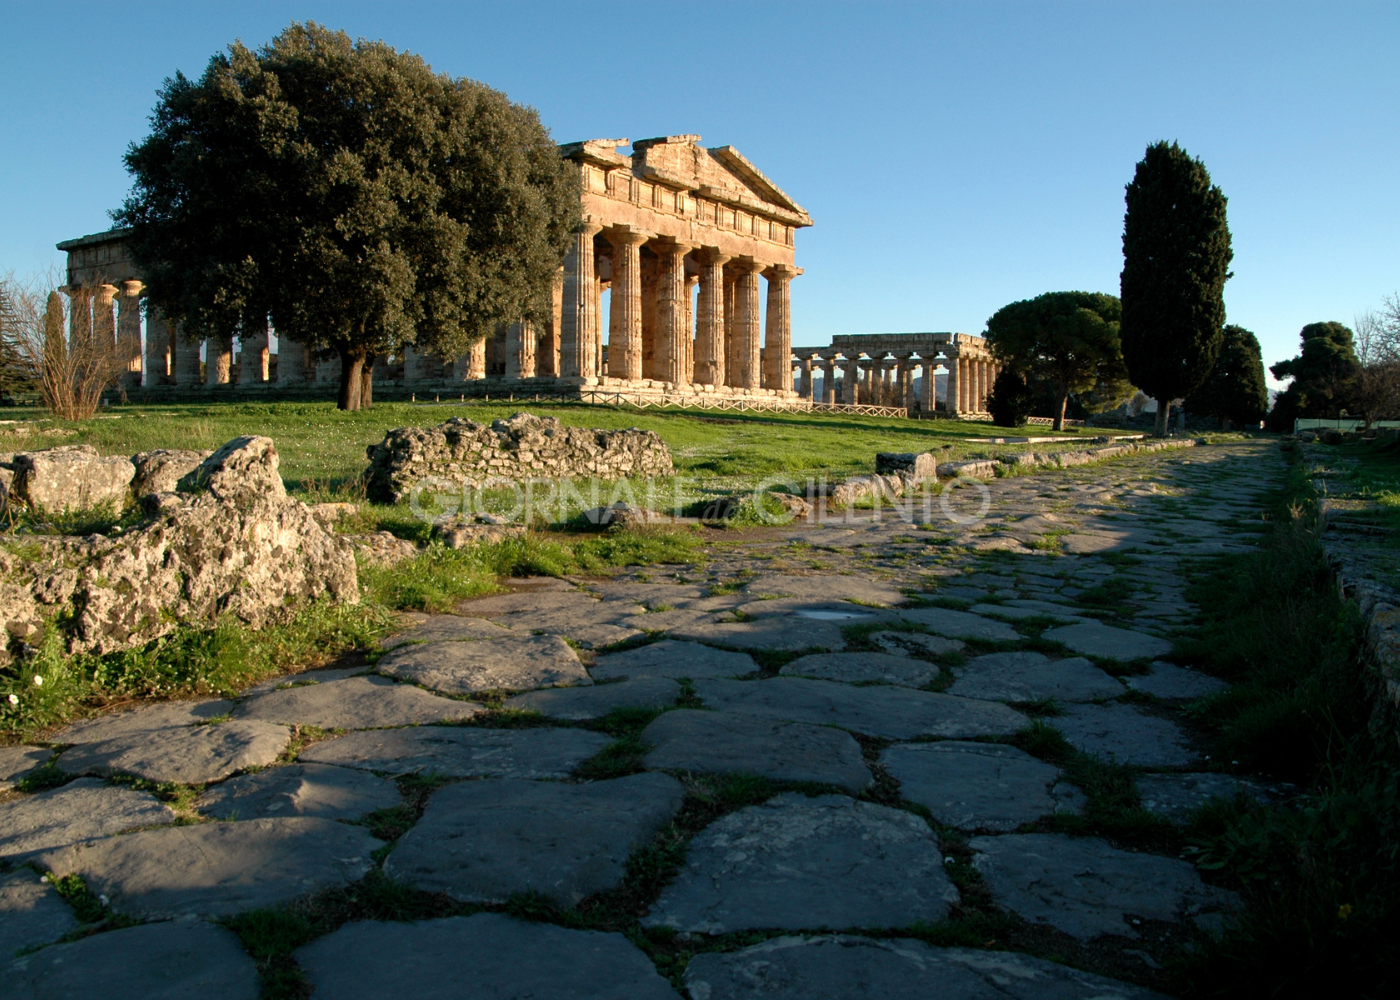 Parco archeologico Paestum: 7 mila euro per un’ora nel tempio di Nettuno. Le nuove tariffe